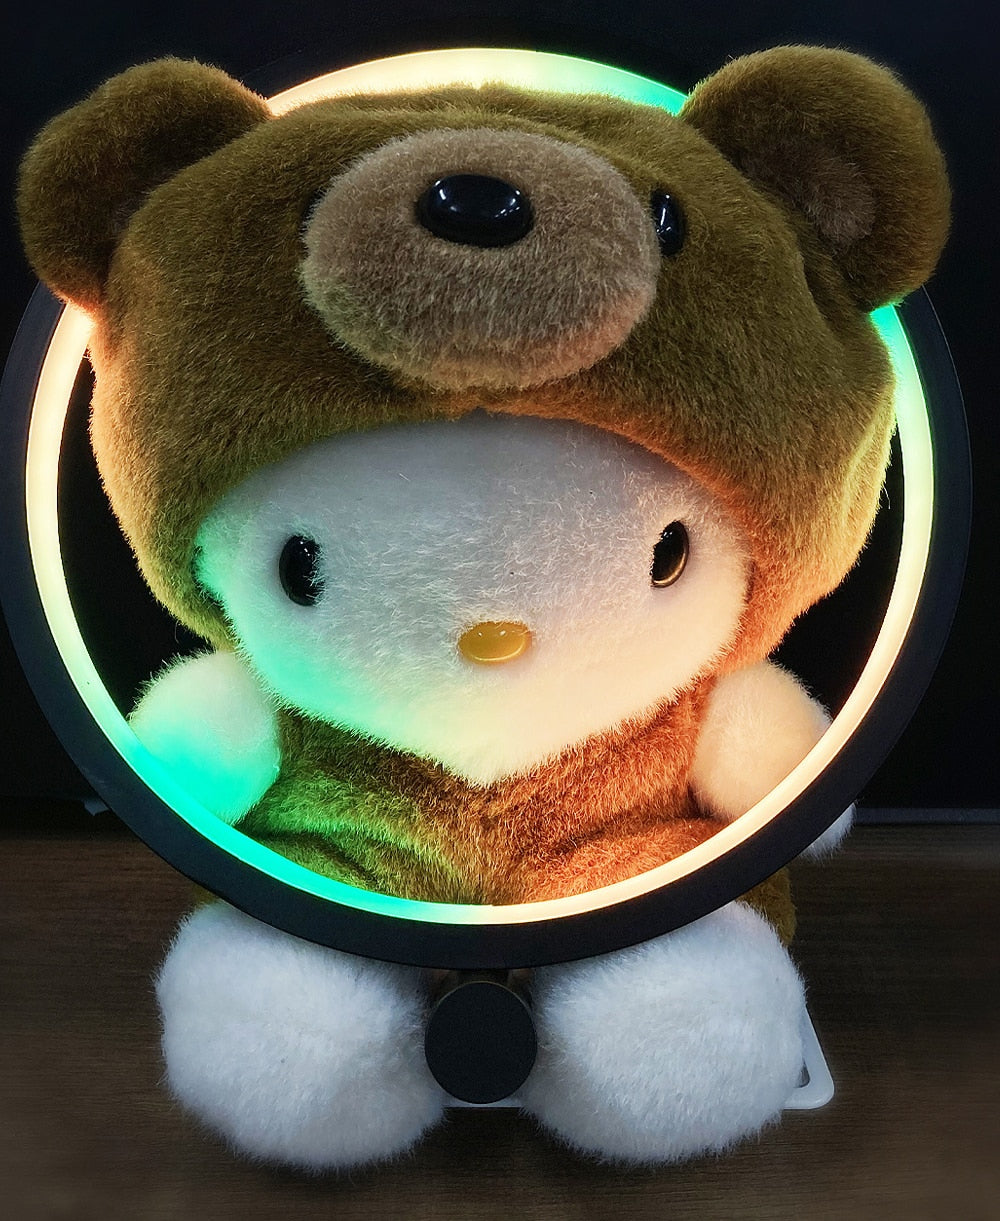 Lámpara de mesa LED circular para dormitorio - Luces nocturnas inteligentes RGB para sala de estar - Control por aplicación Bluetooth Decoración redonda